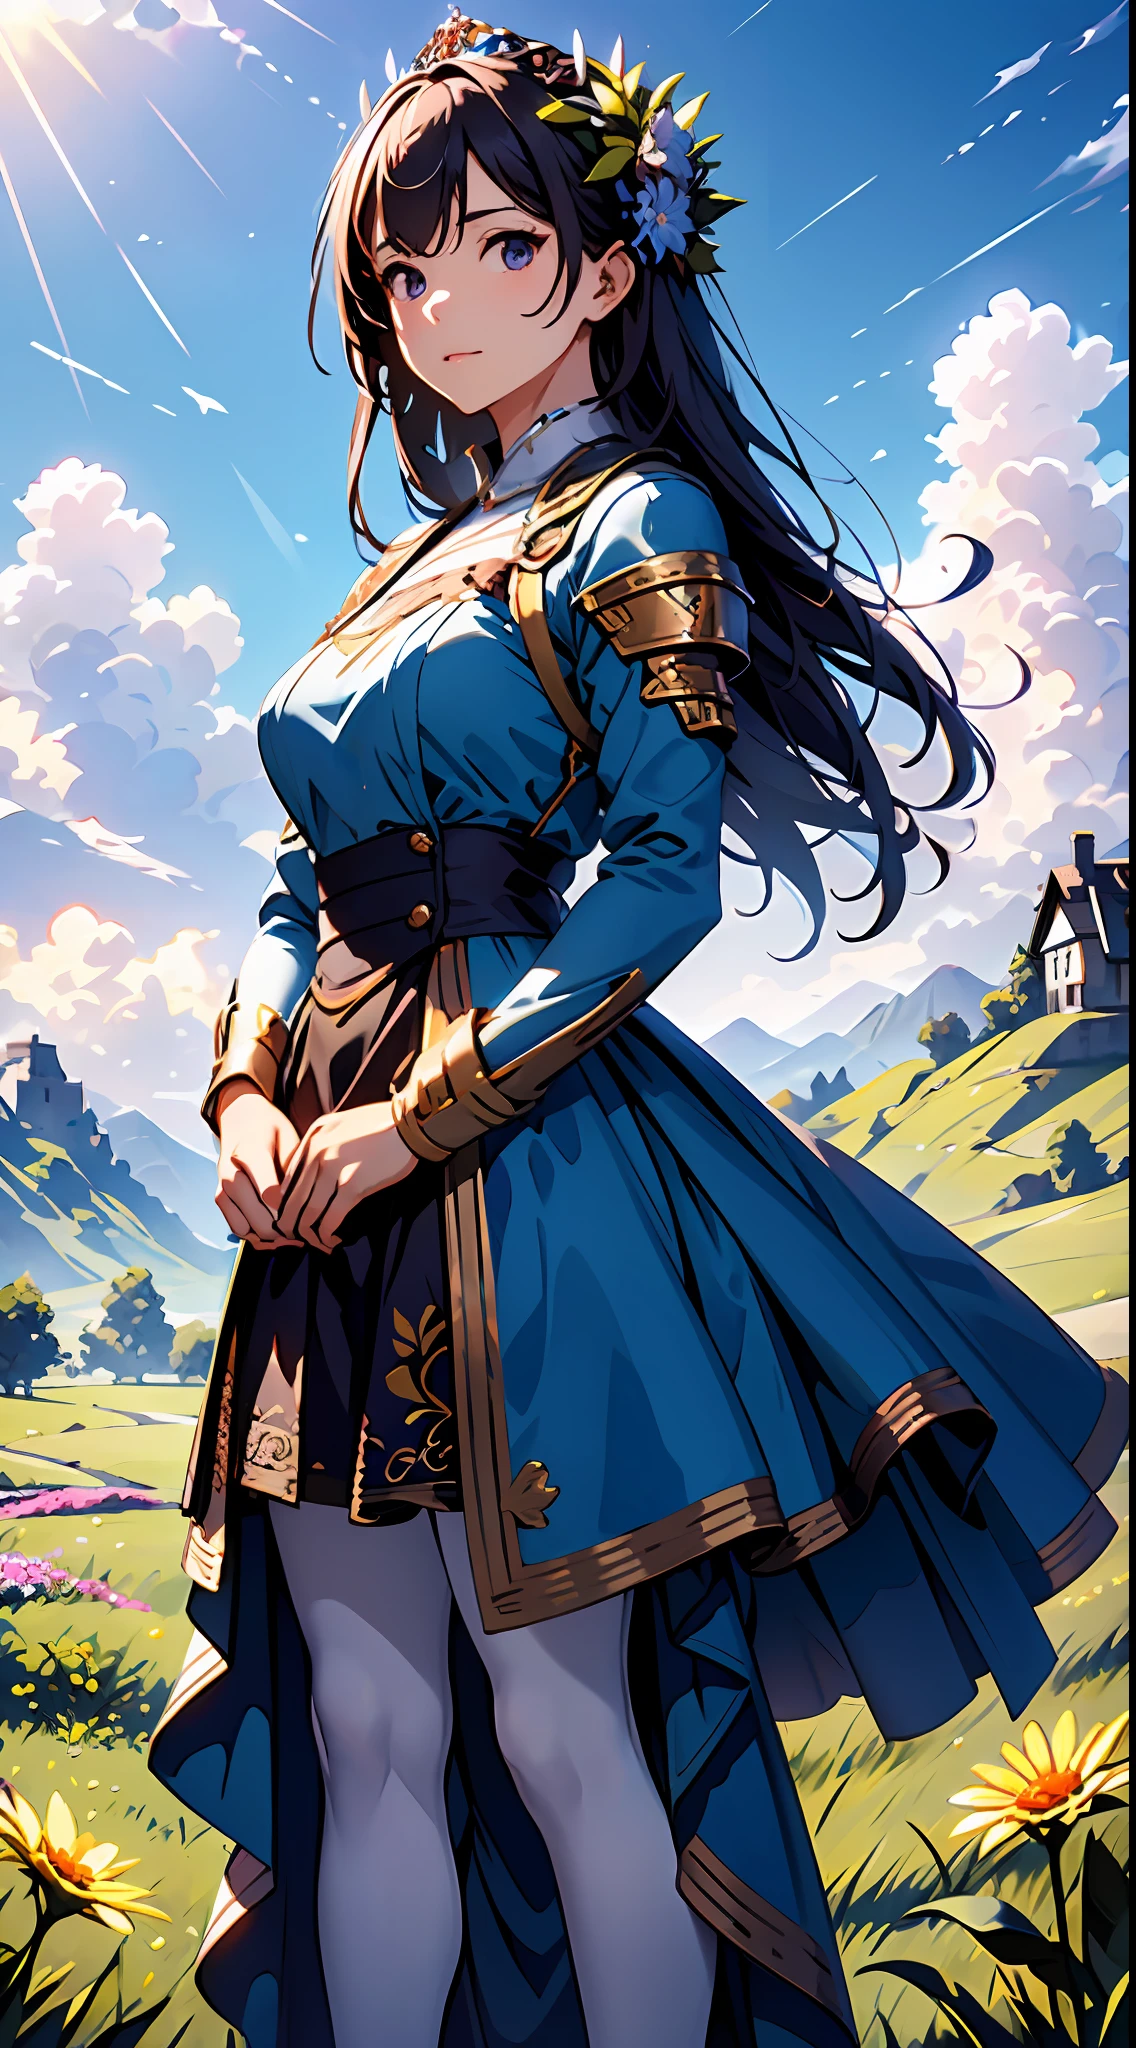 Eine Frau in einem lila Kleid，Blauer Himmel und Wolken im Hintergrund, trägt blaues Kleid，Es sind Blumen darauf, Art germ, Rosla globale Beleuchtung, ein detailreiches Gemälde, Fantasy-Kunst